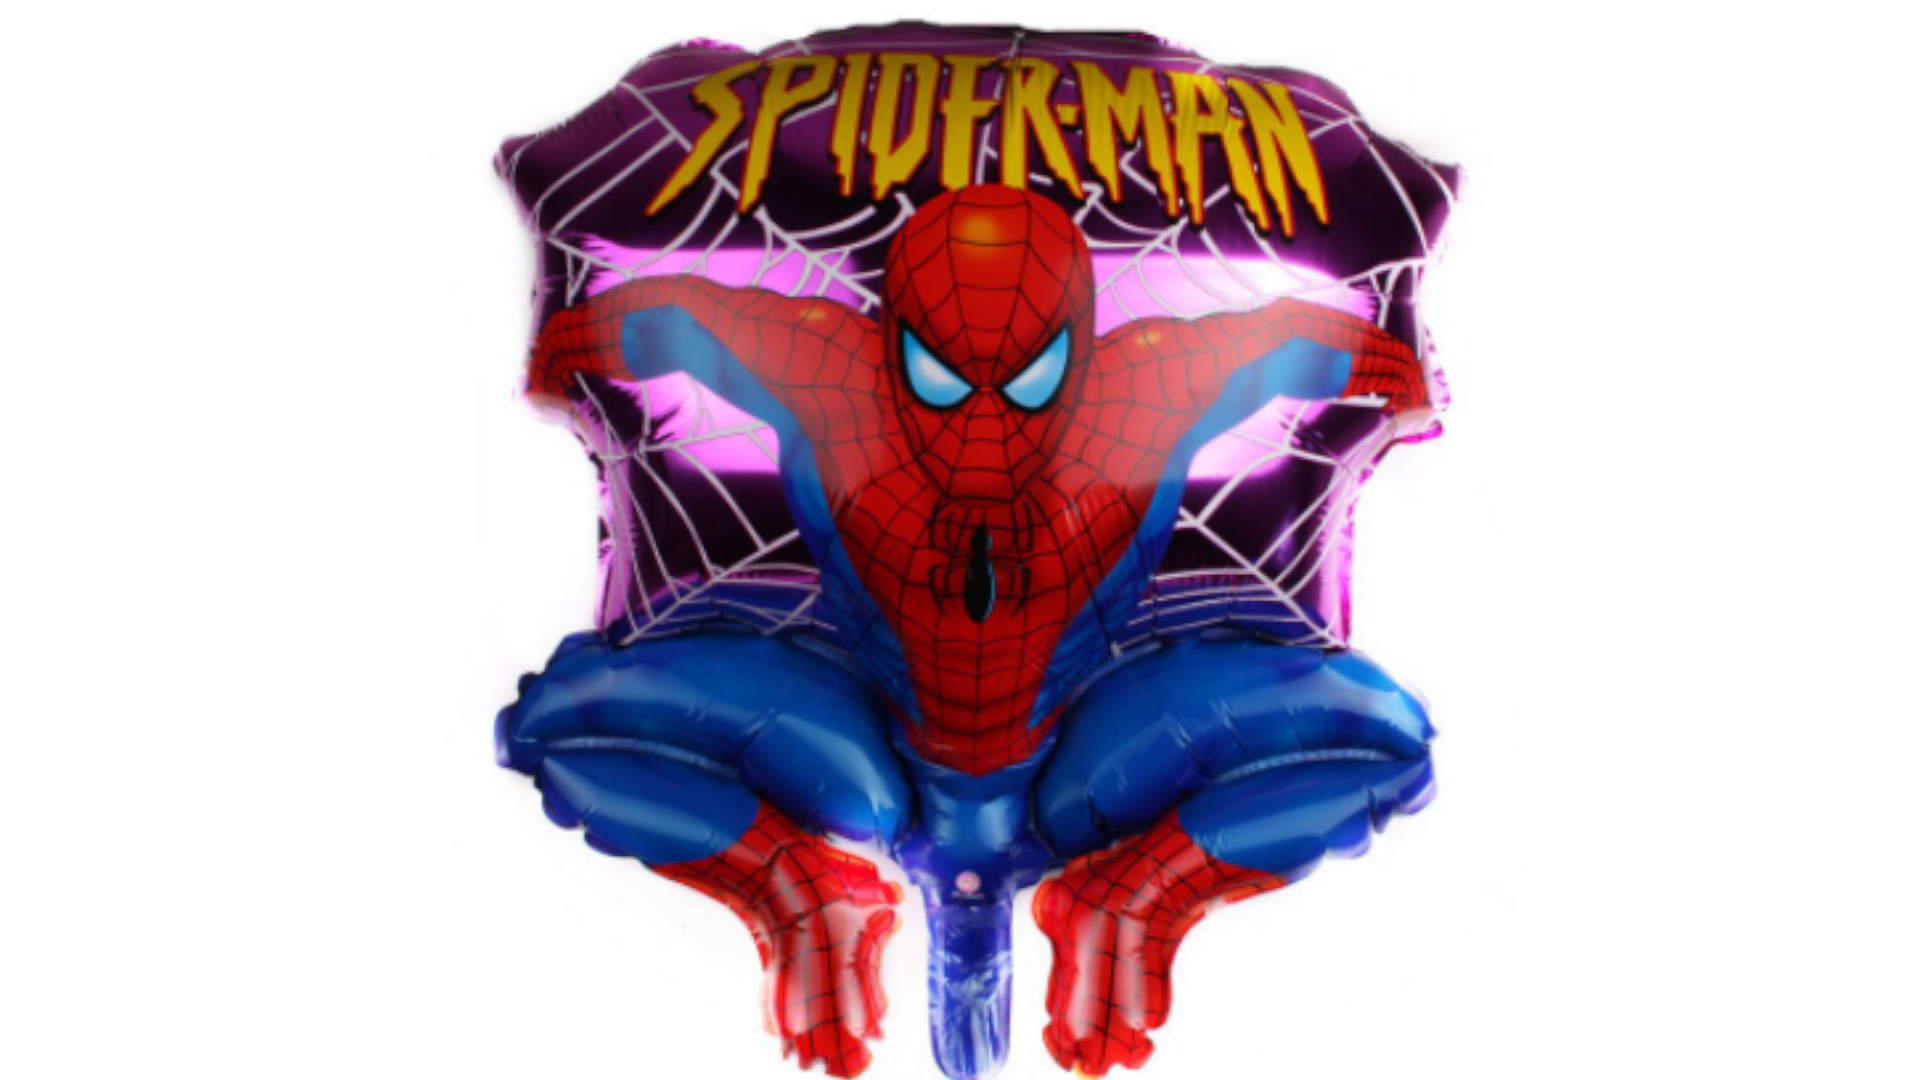 Balon Foliowy Spider-Man Skaczący 68 x 54 cm. Na Hel lub powietrze. Spajdermen tomdorix.pl